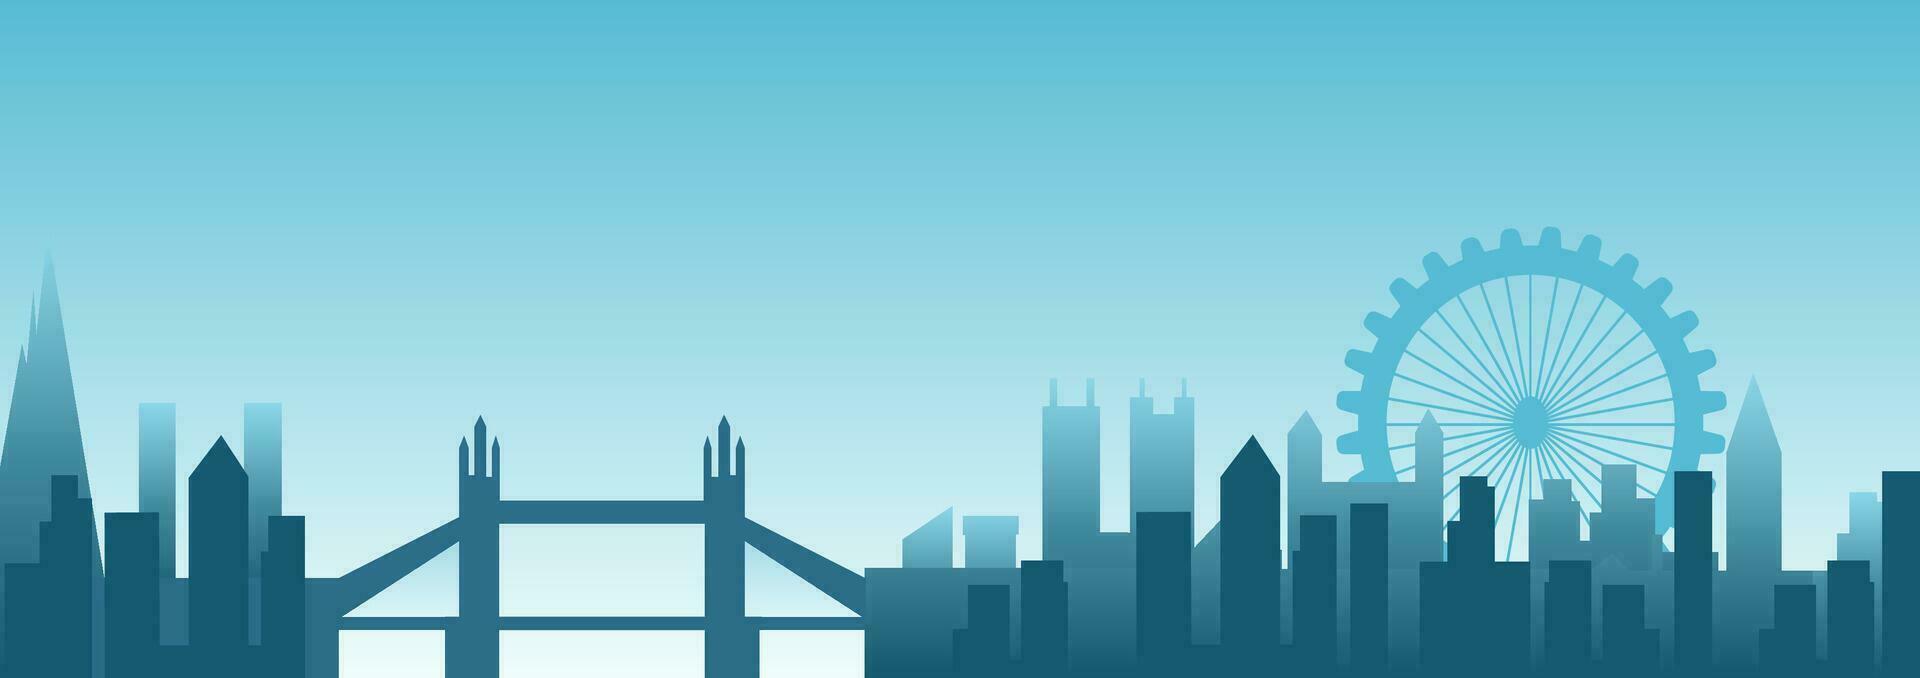 licht blauw stadsgezicht achtergrond. stad gebouwen met brug en ferris wiel. modern bouwkundig panorama in vlak stijl. vector illustratie horizontaal behang